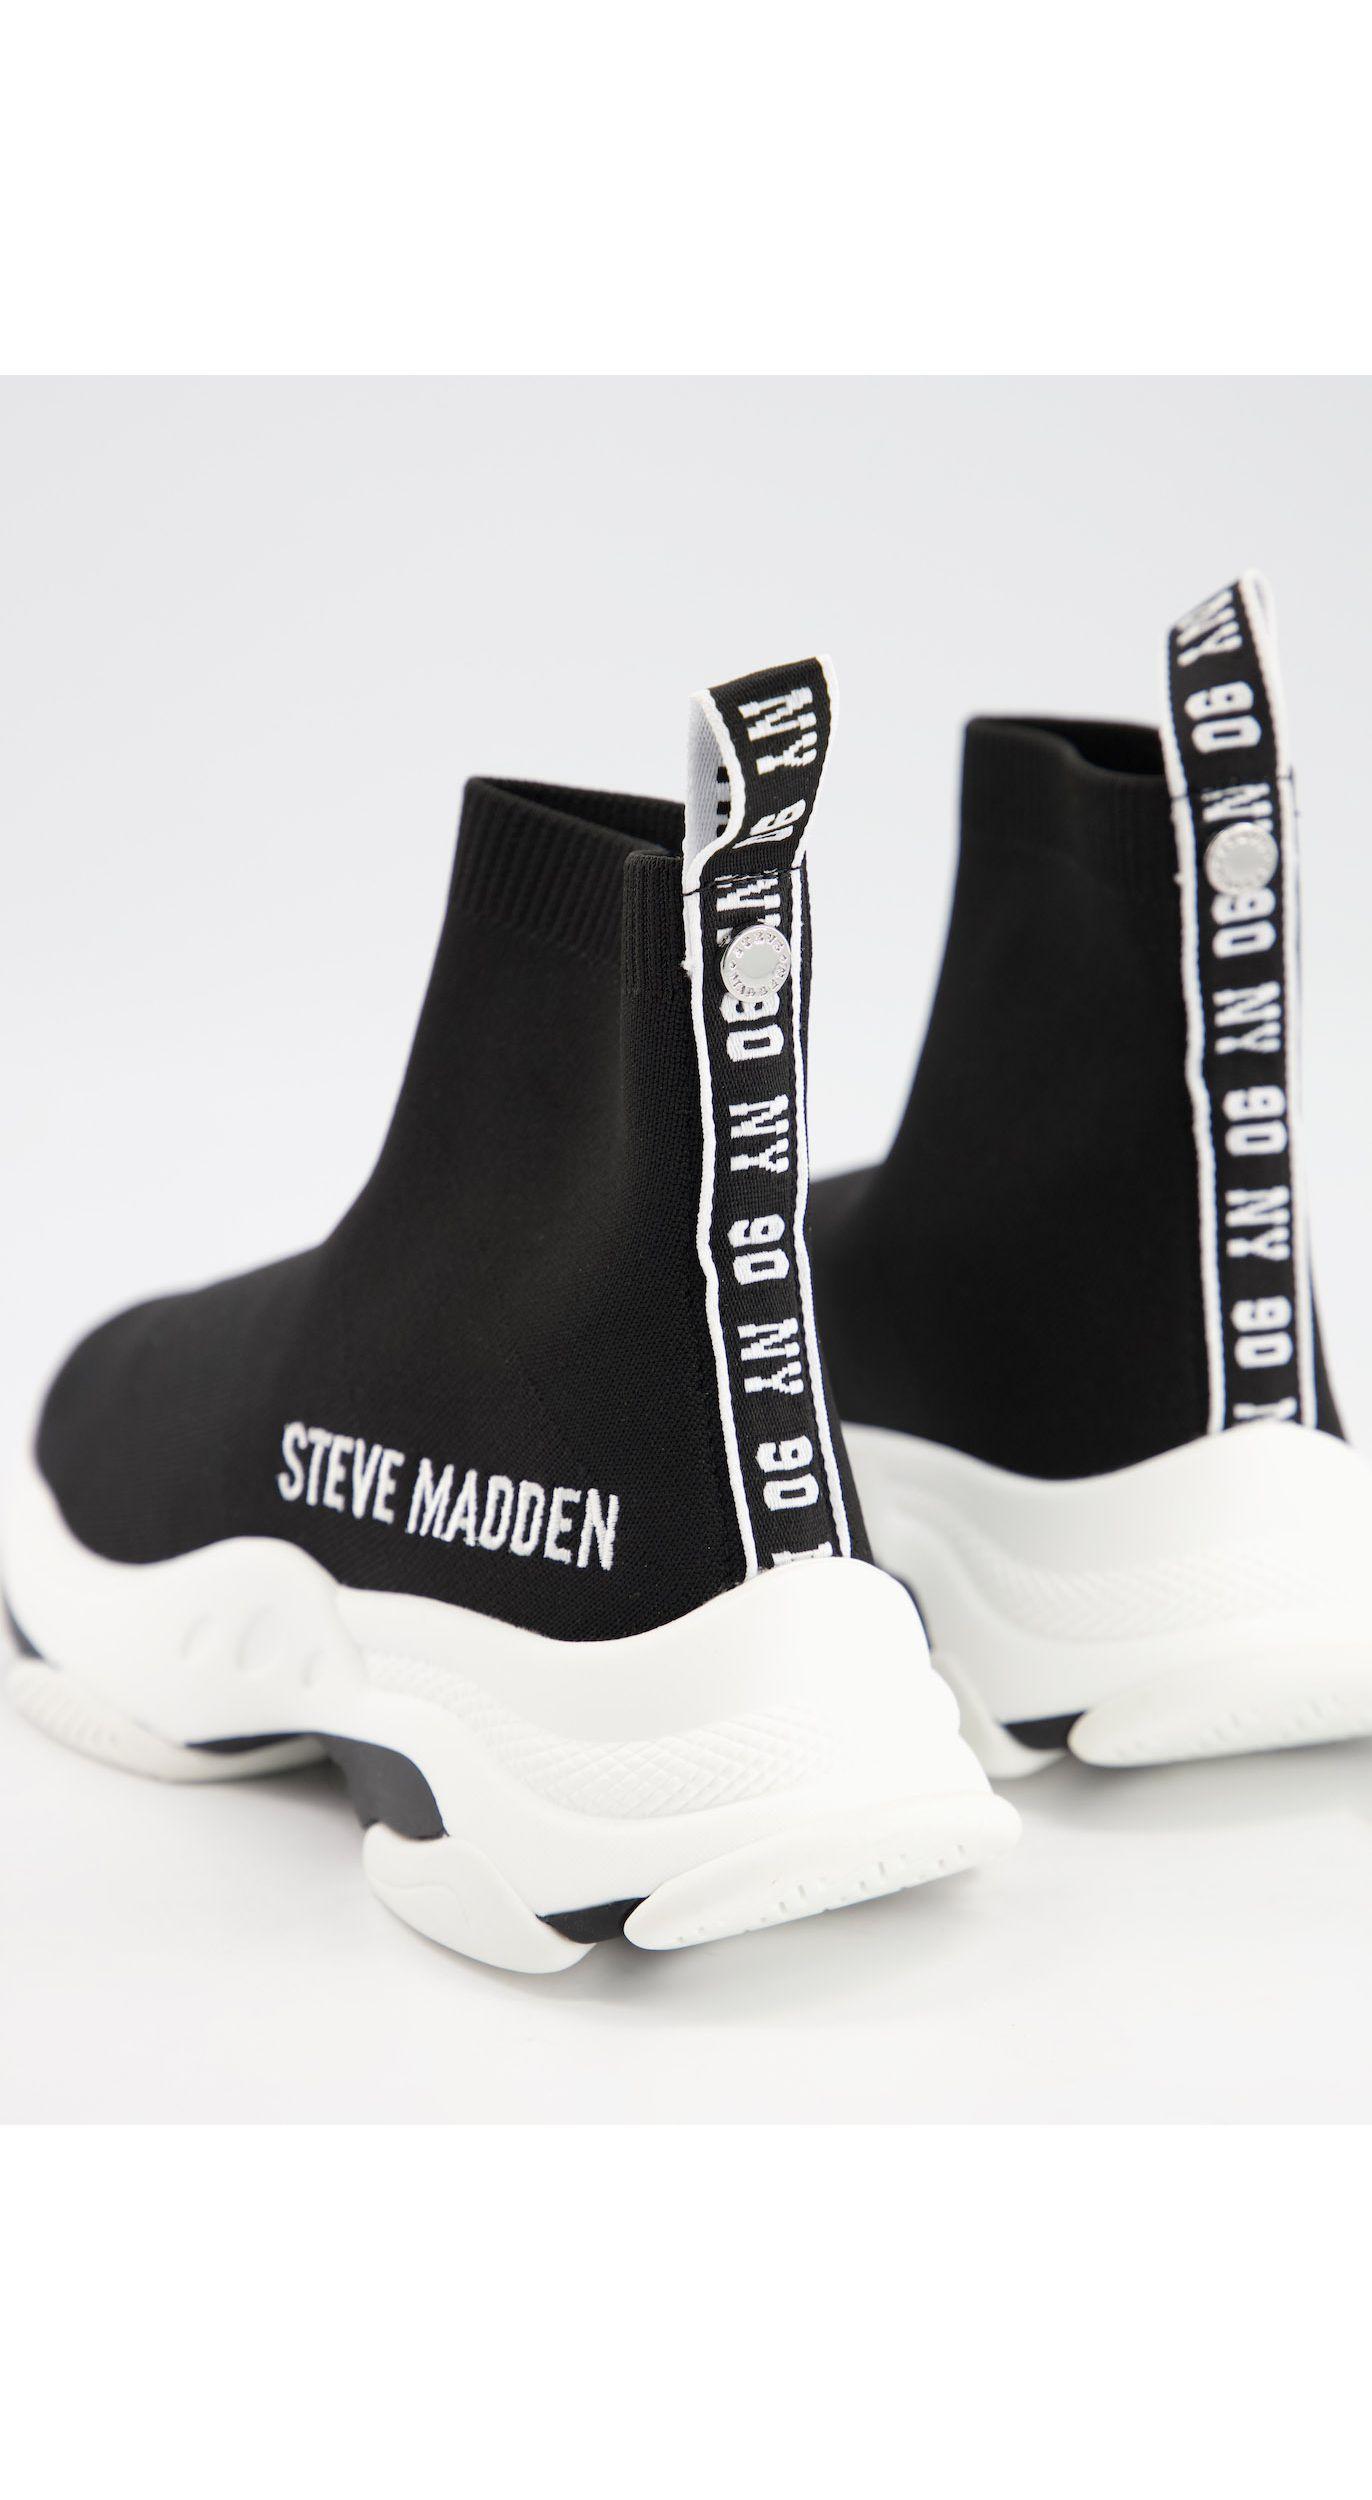 Steve Madden Rubber Master Sock Trainers in Black | Lyst Australia